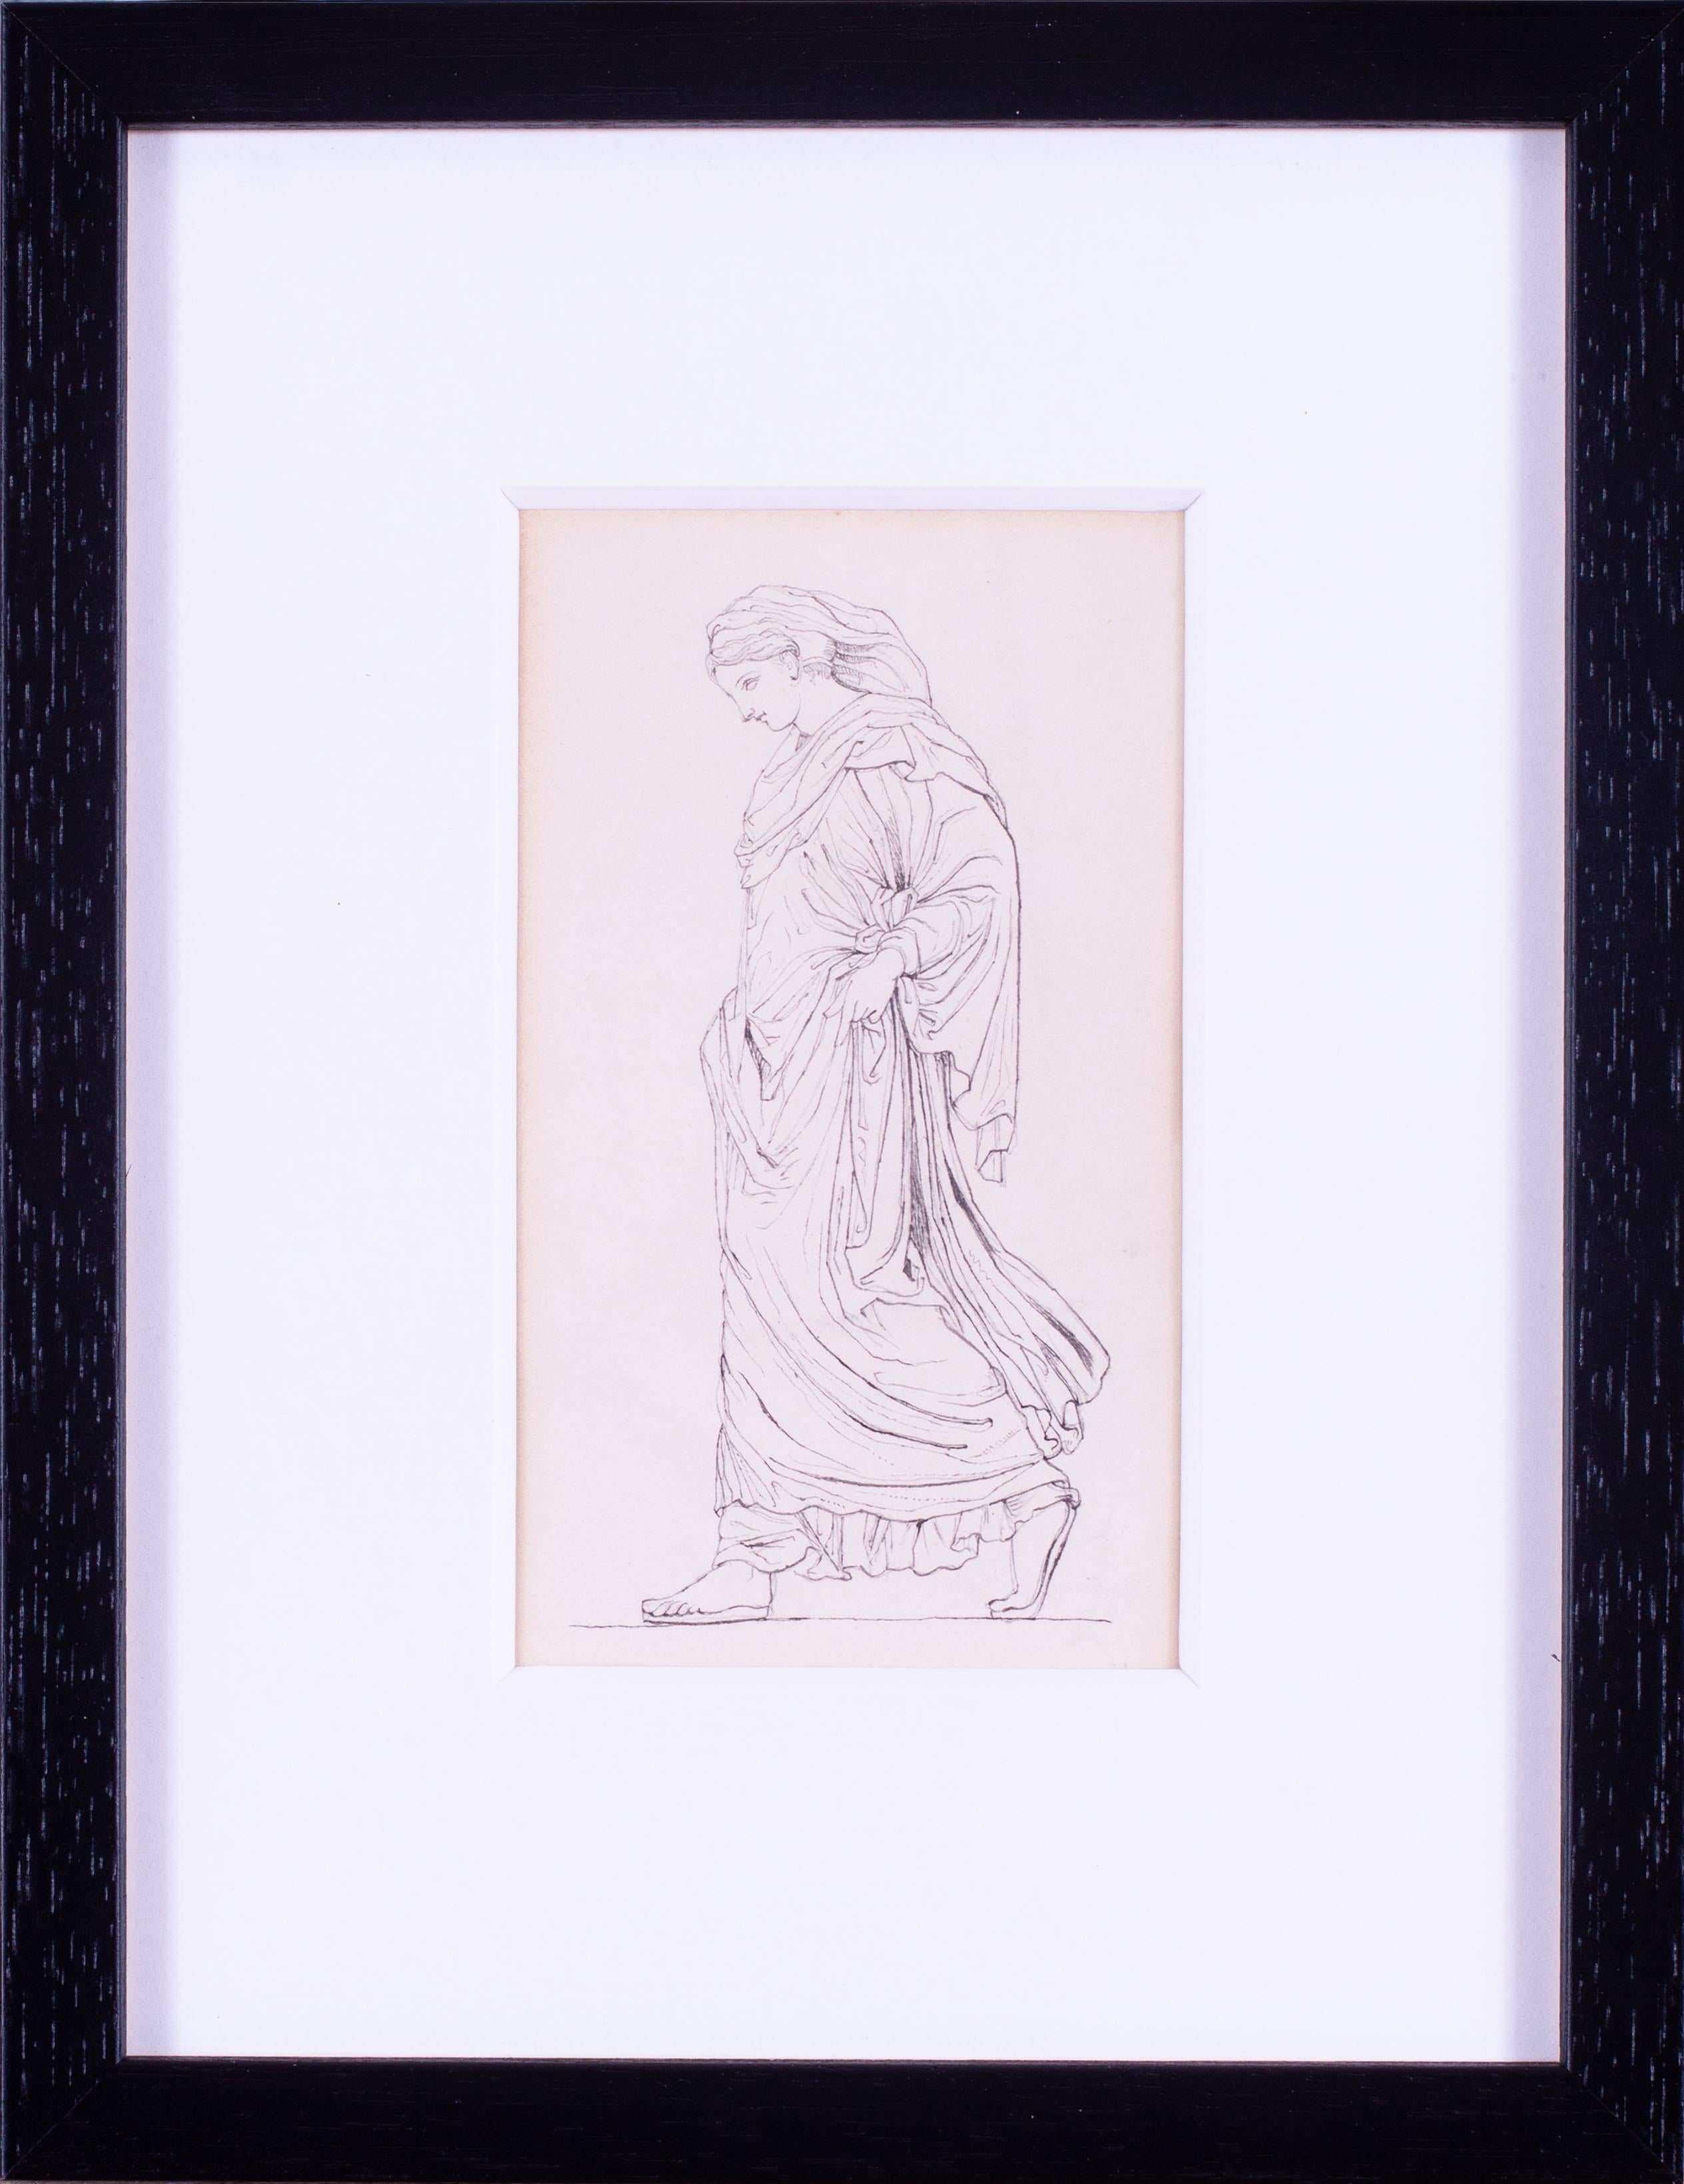 Dessin du 19e siècle attribué à John Flaxman représentant une jeune fille classique.